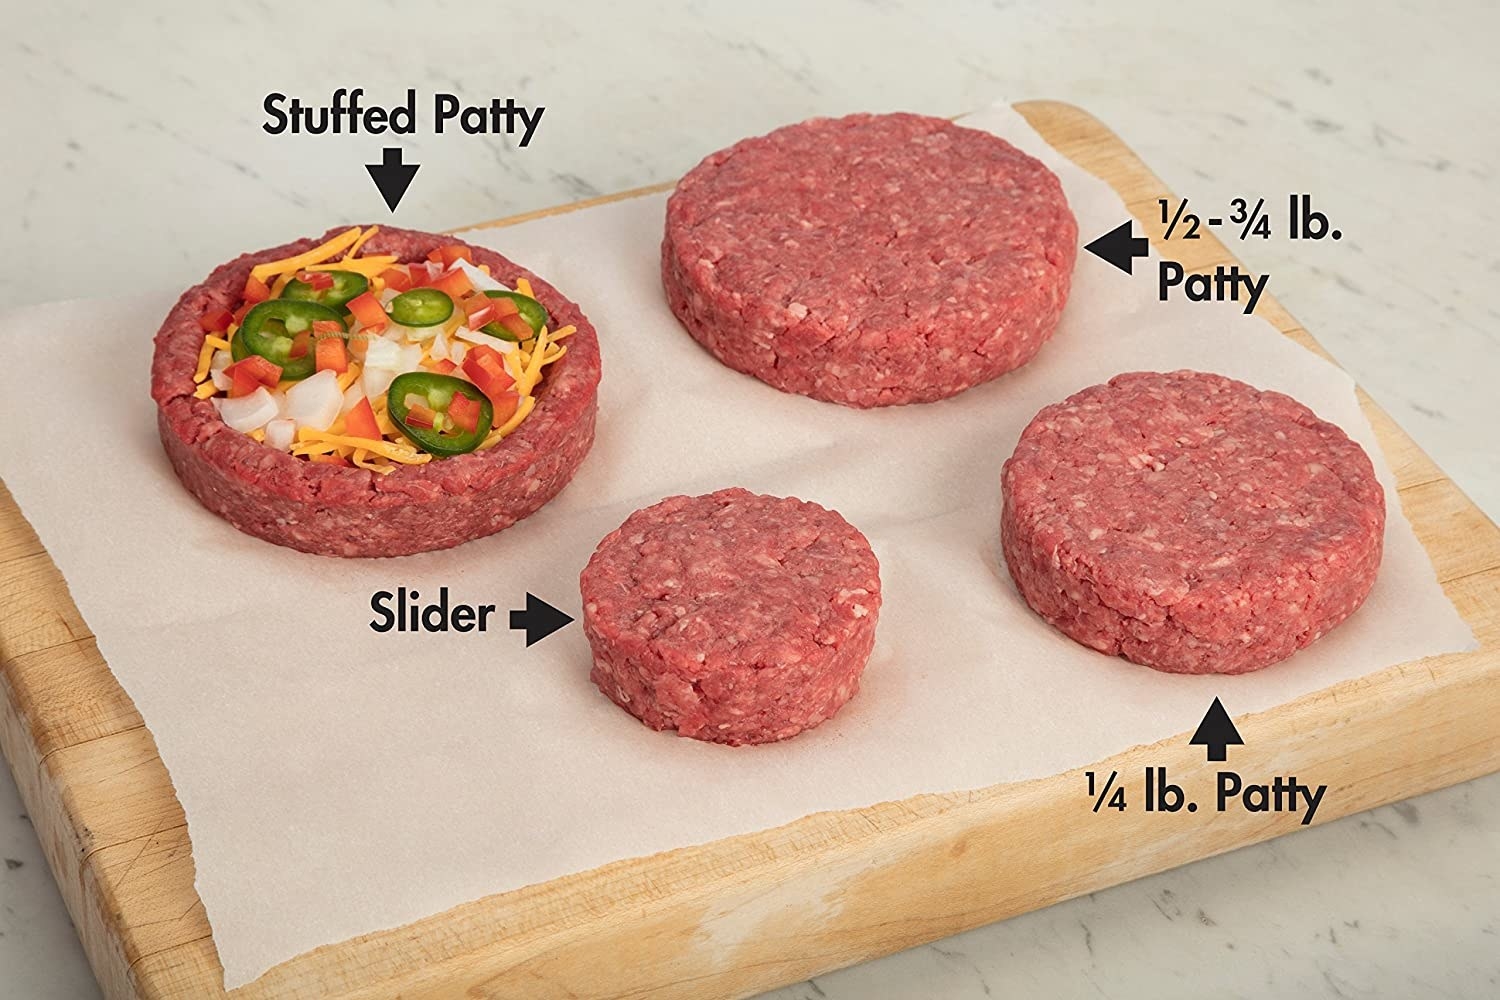 肉饼显示不同的大小:填充肉饼，1/2-3/4磅肉饼，1/4磅肉饼和滑块